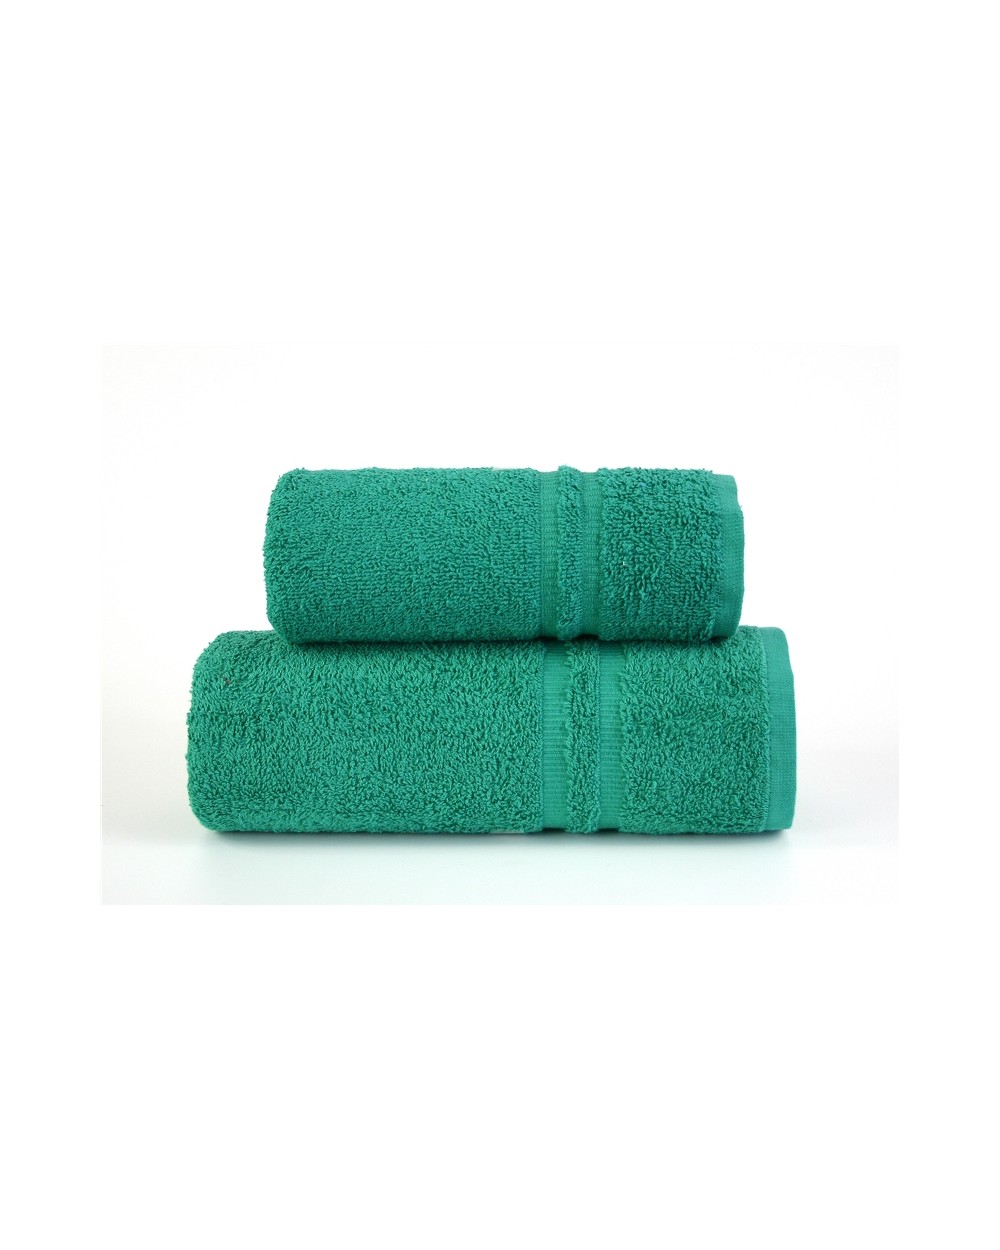 Ręcznik Junak New bawełna 70x140 zielony